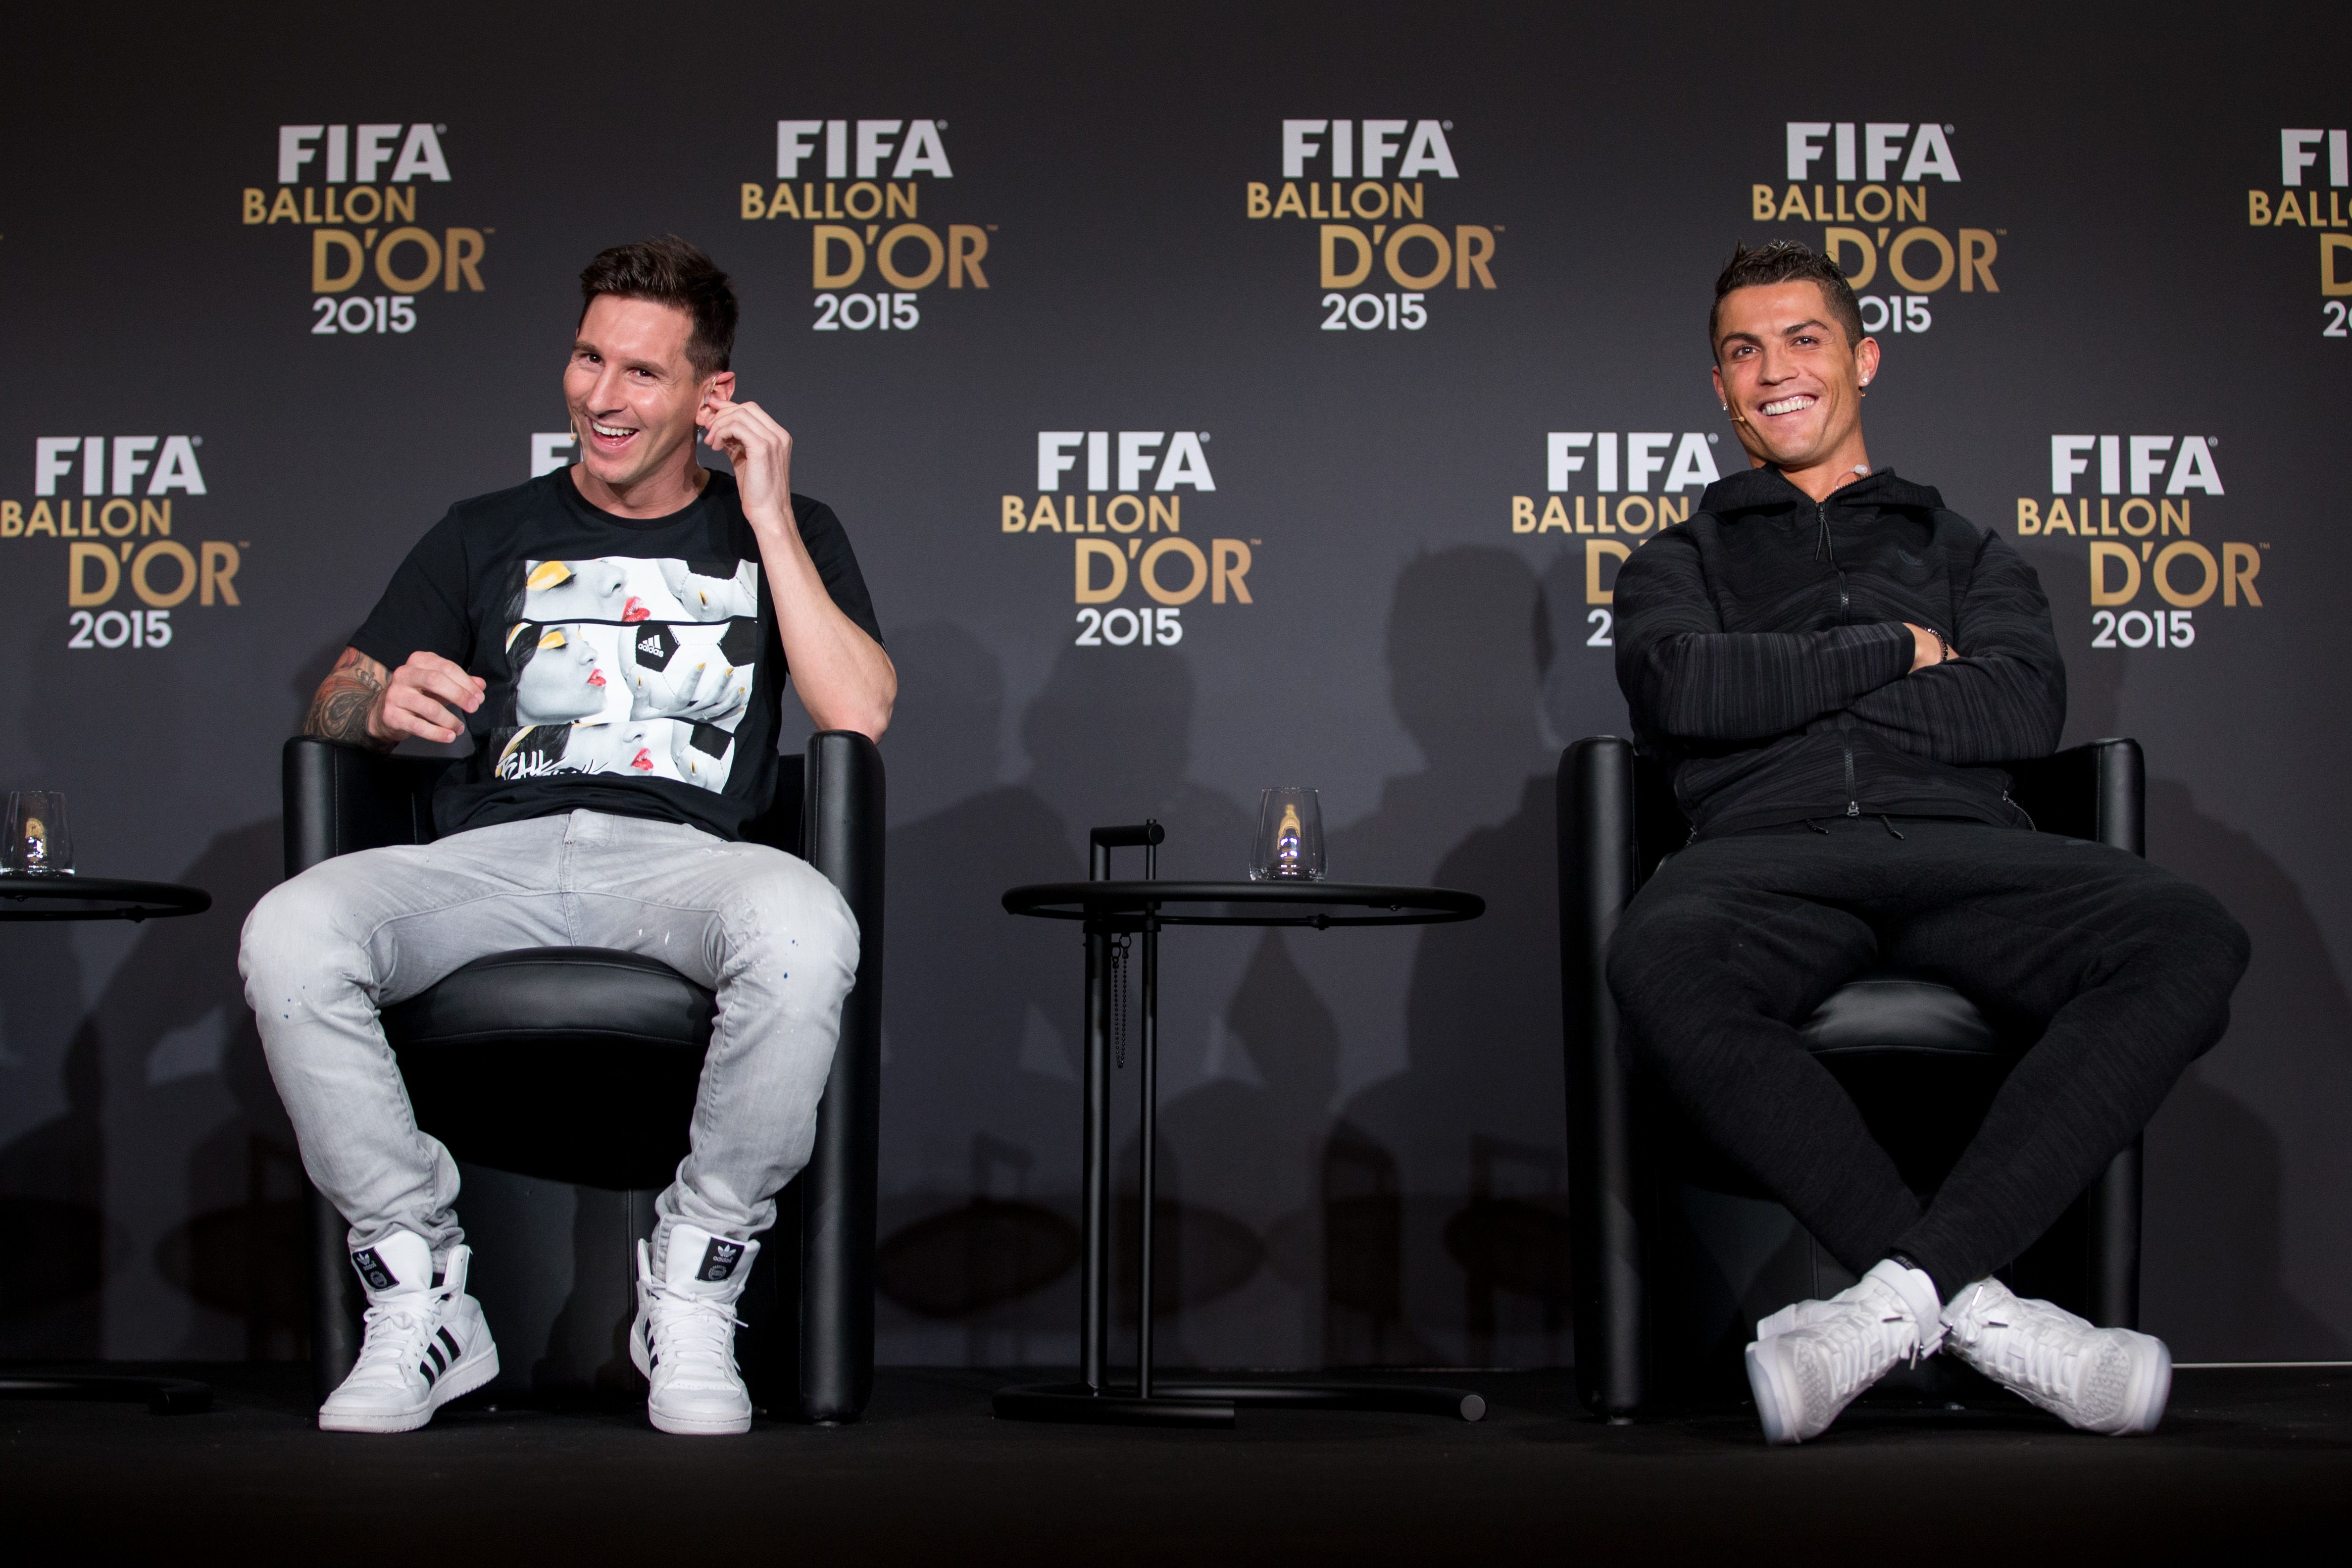 Lionel Messi and Cristiano Ronaldo at a press conference